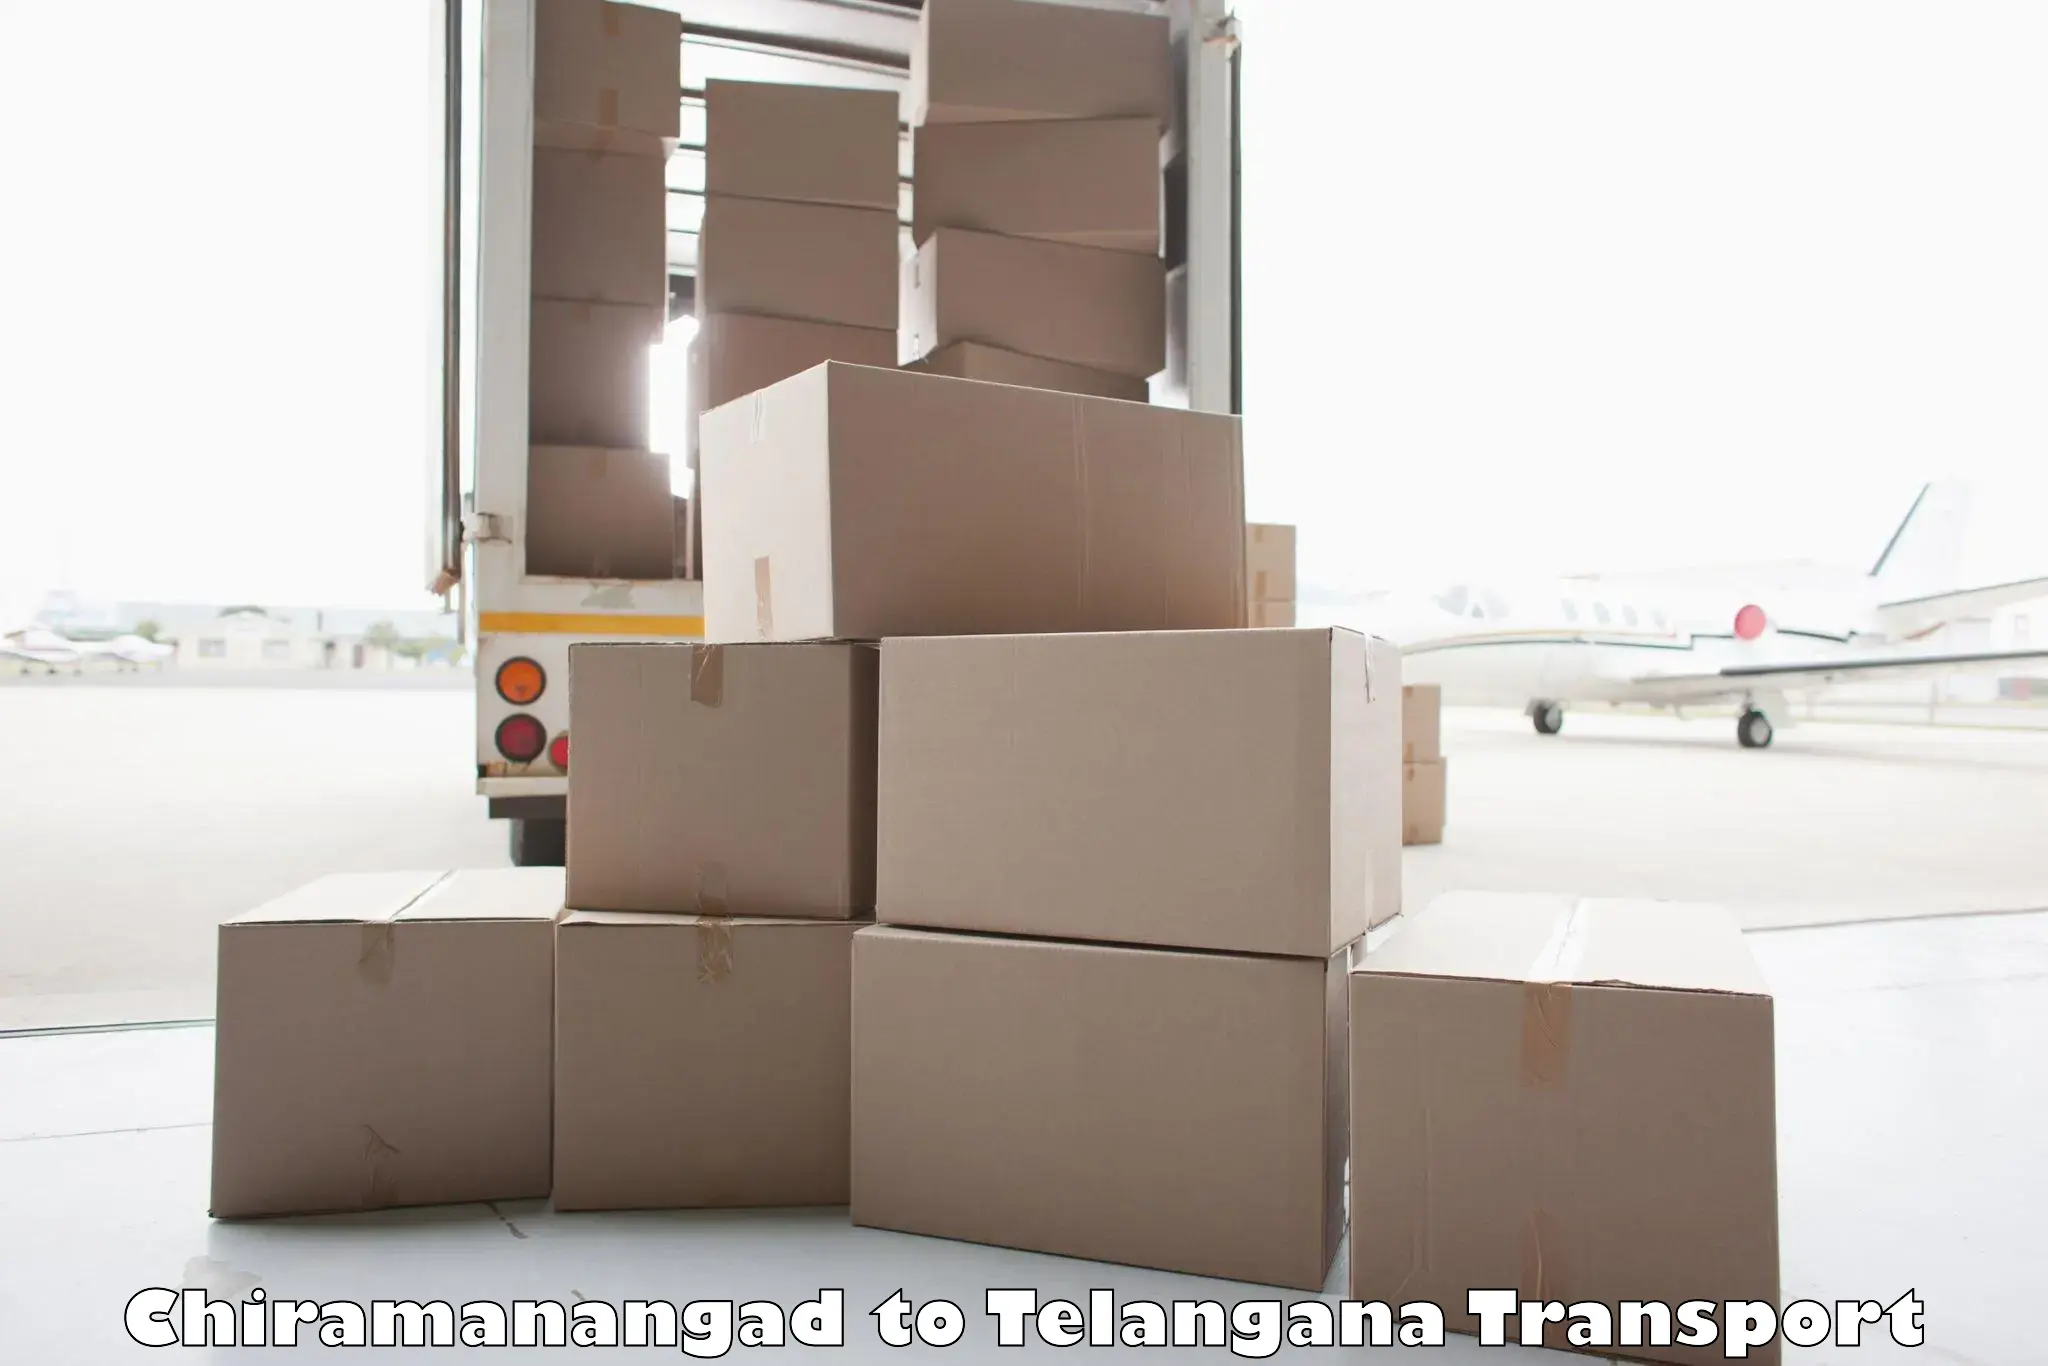 Vehicle parcel service Chiramanangad to Choppadandi